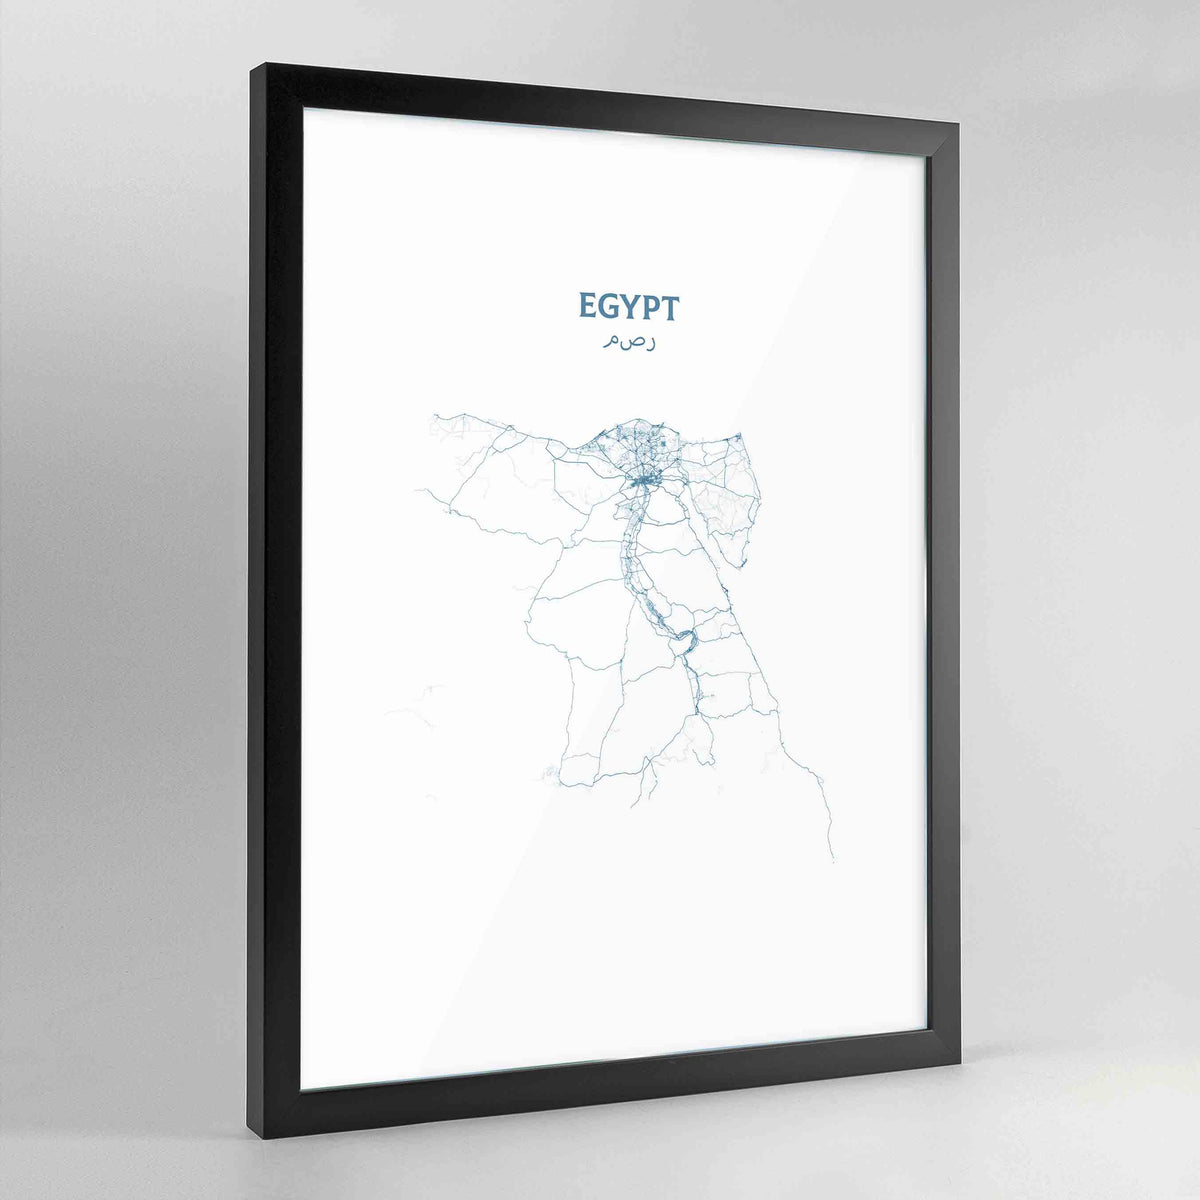 Egypt - All Roads Art Print - Framed